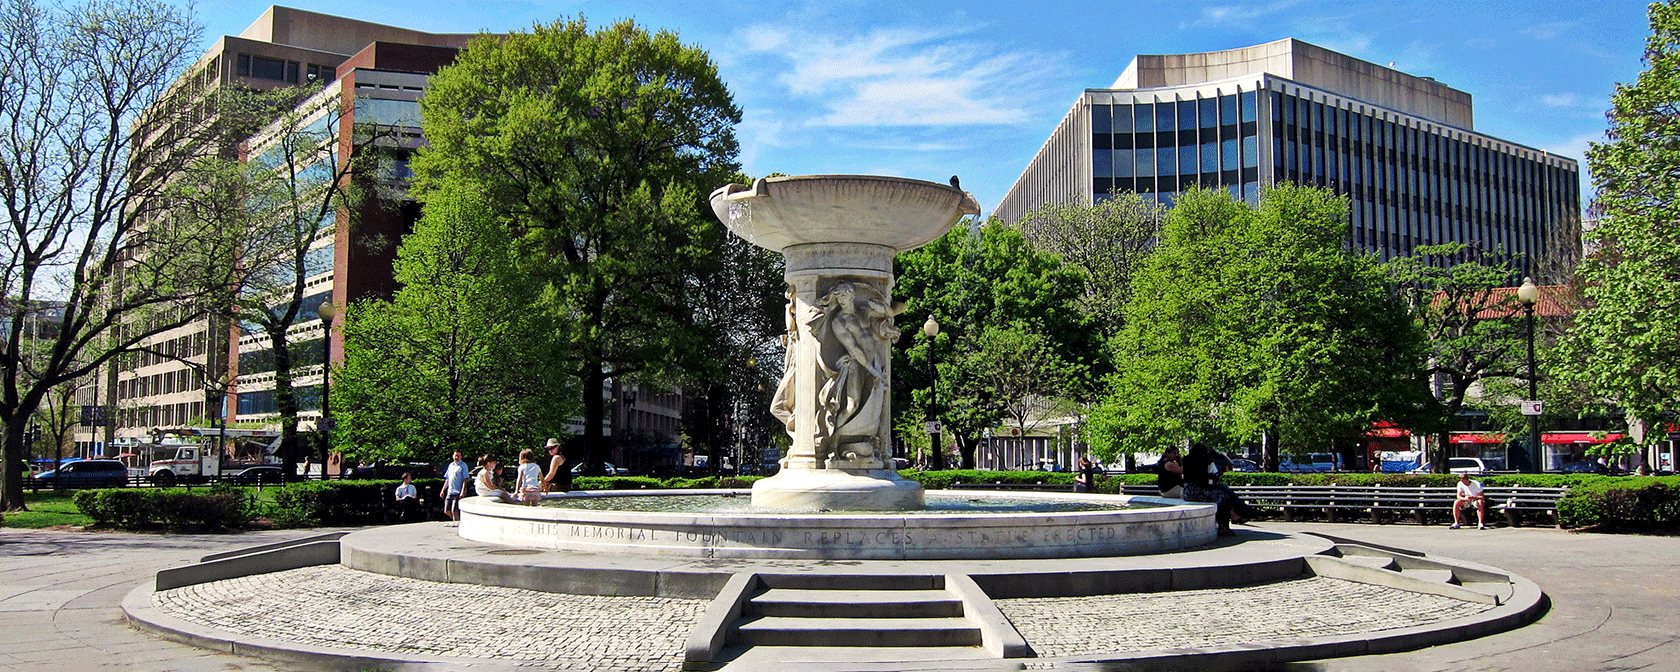 Fontana al Dupont Circle